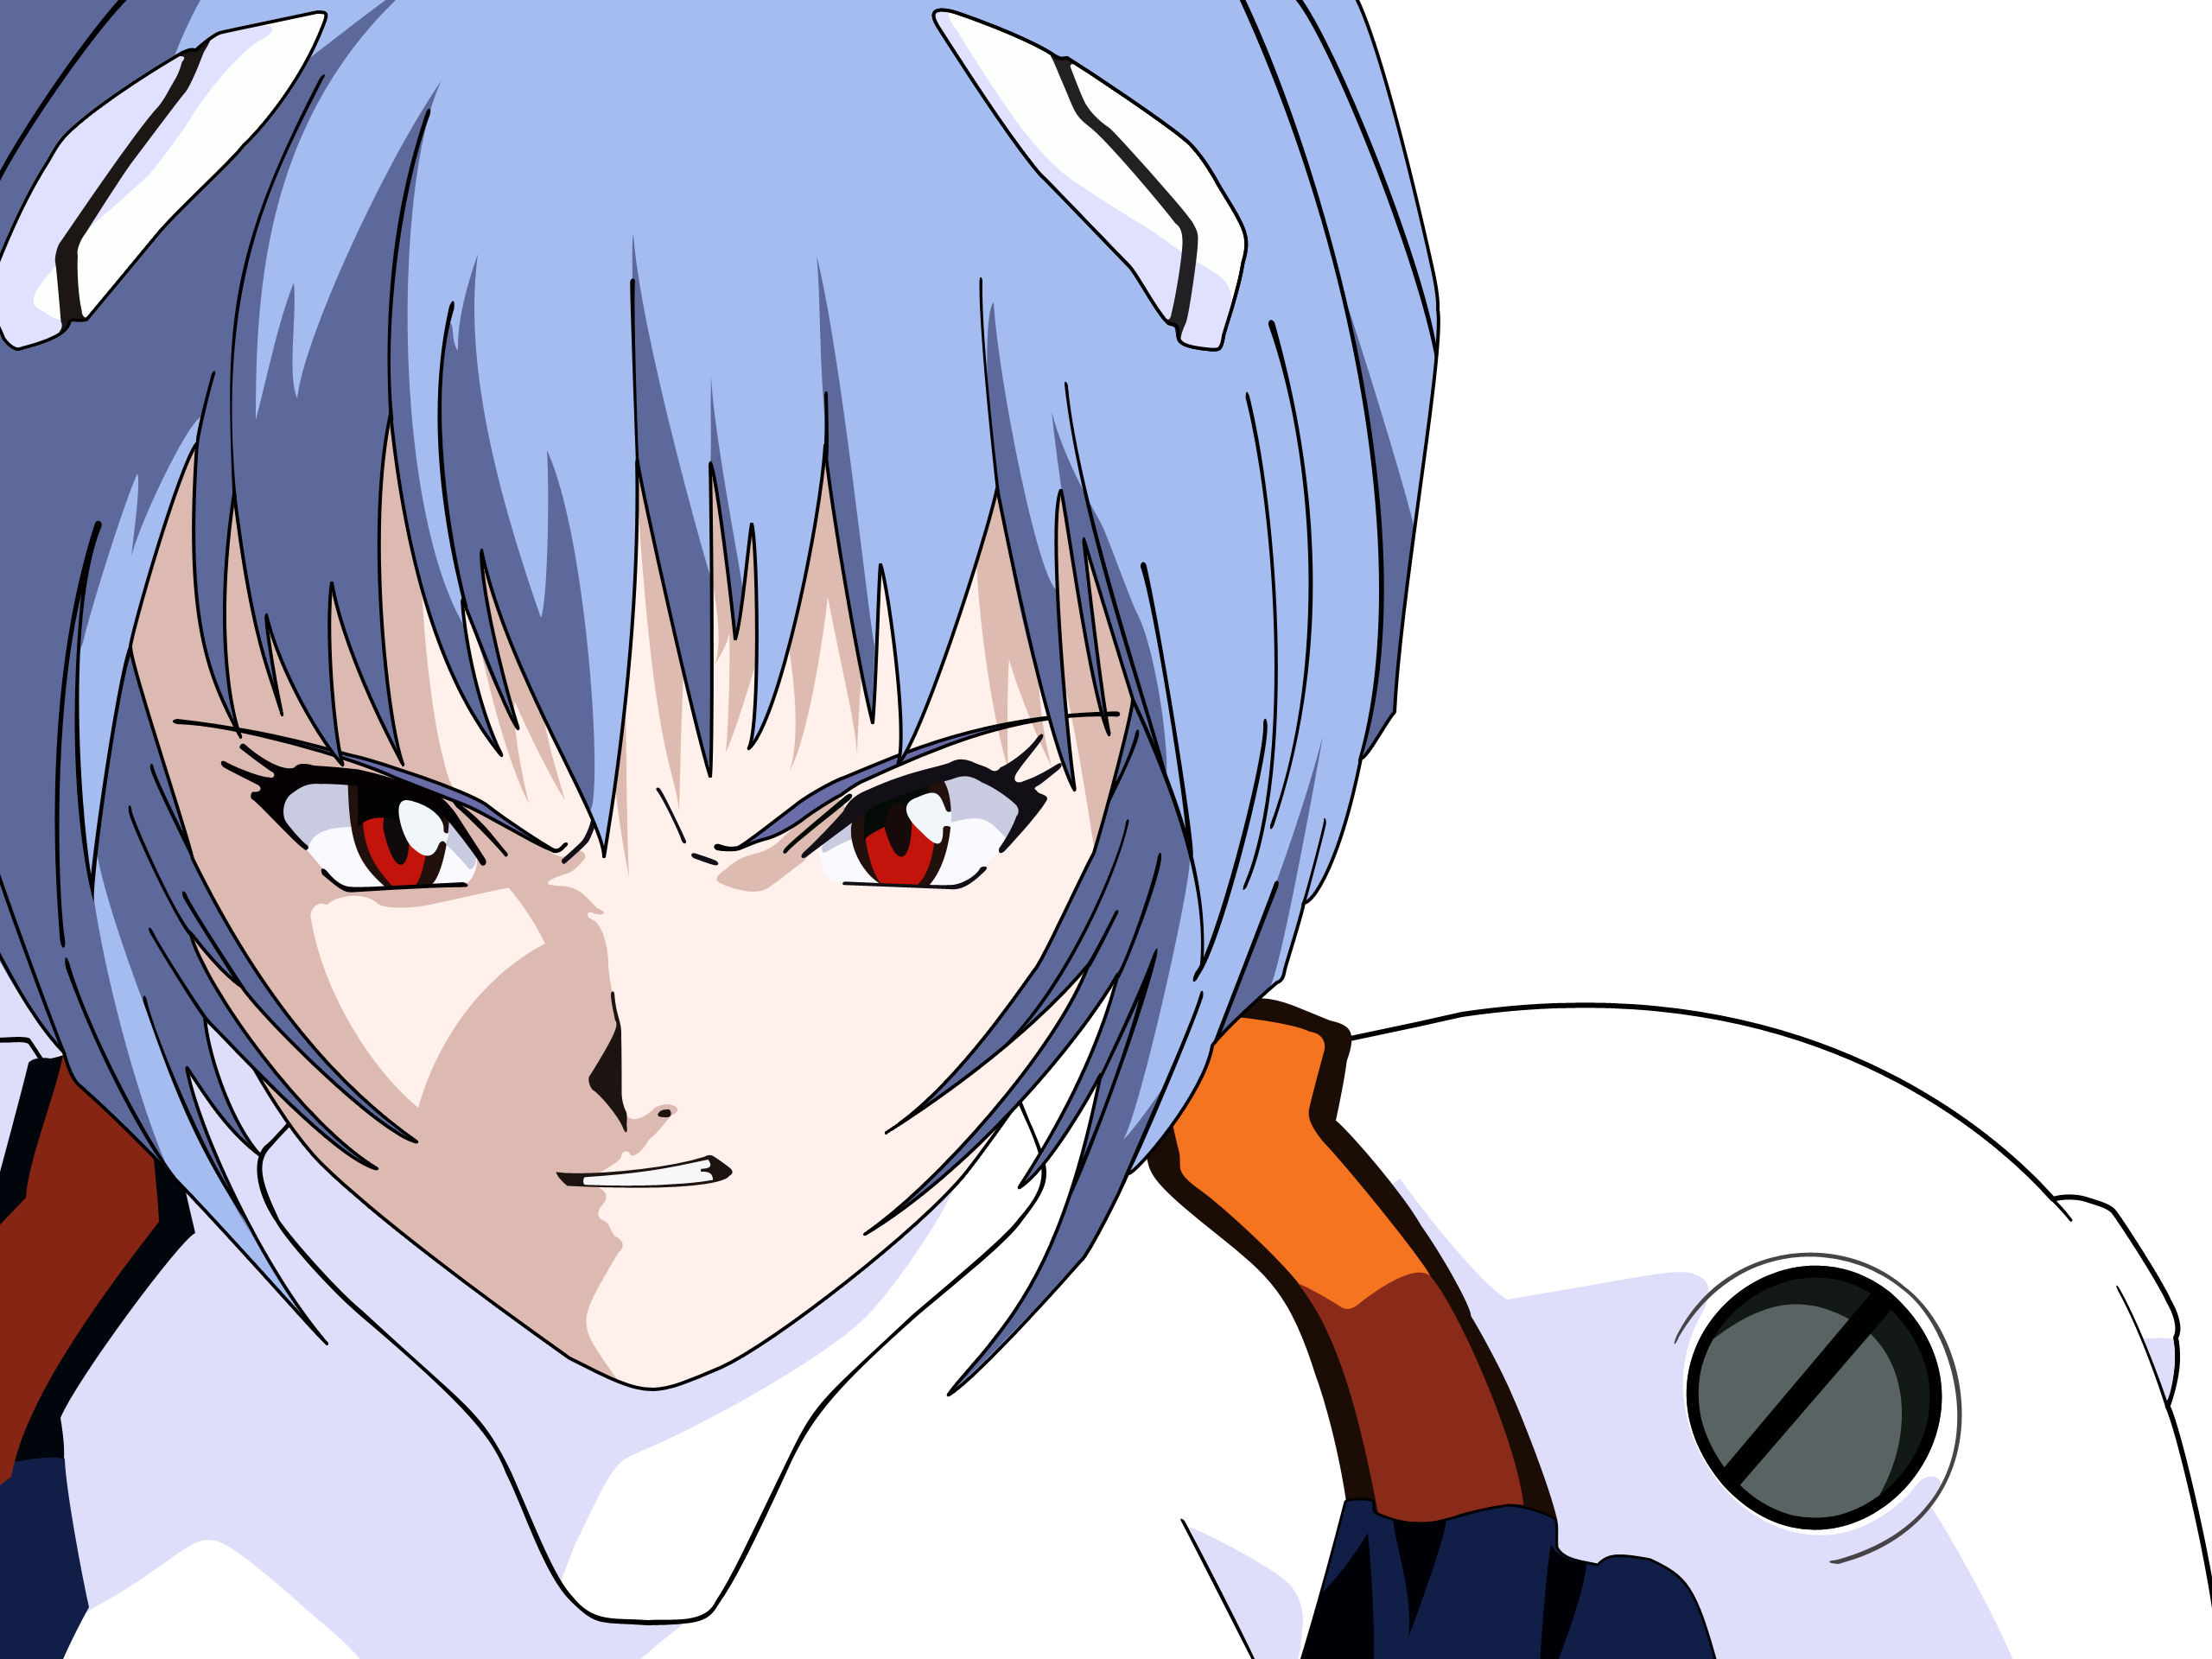 Ayanami Rei, Neon Genesis Evangelion, transparent, anime vectors - desktop wallpaper